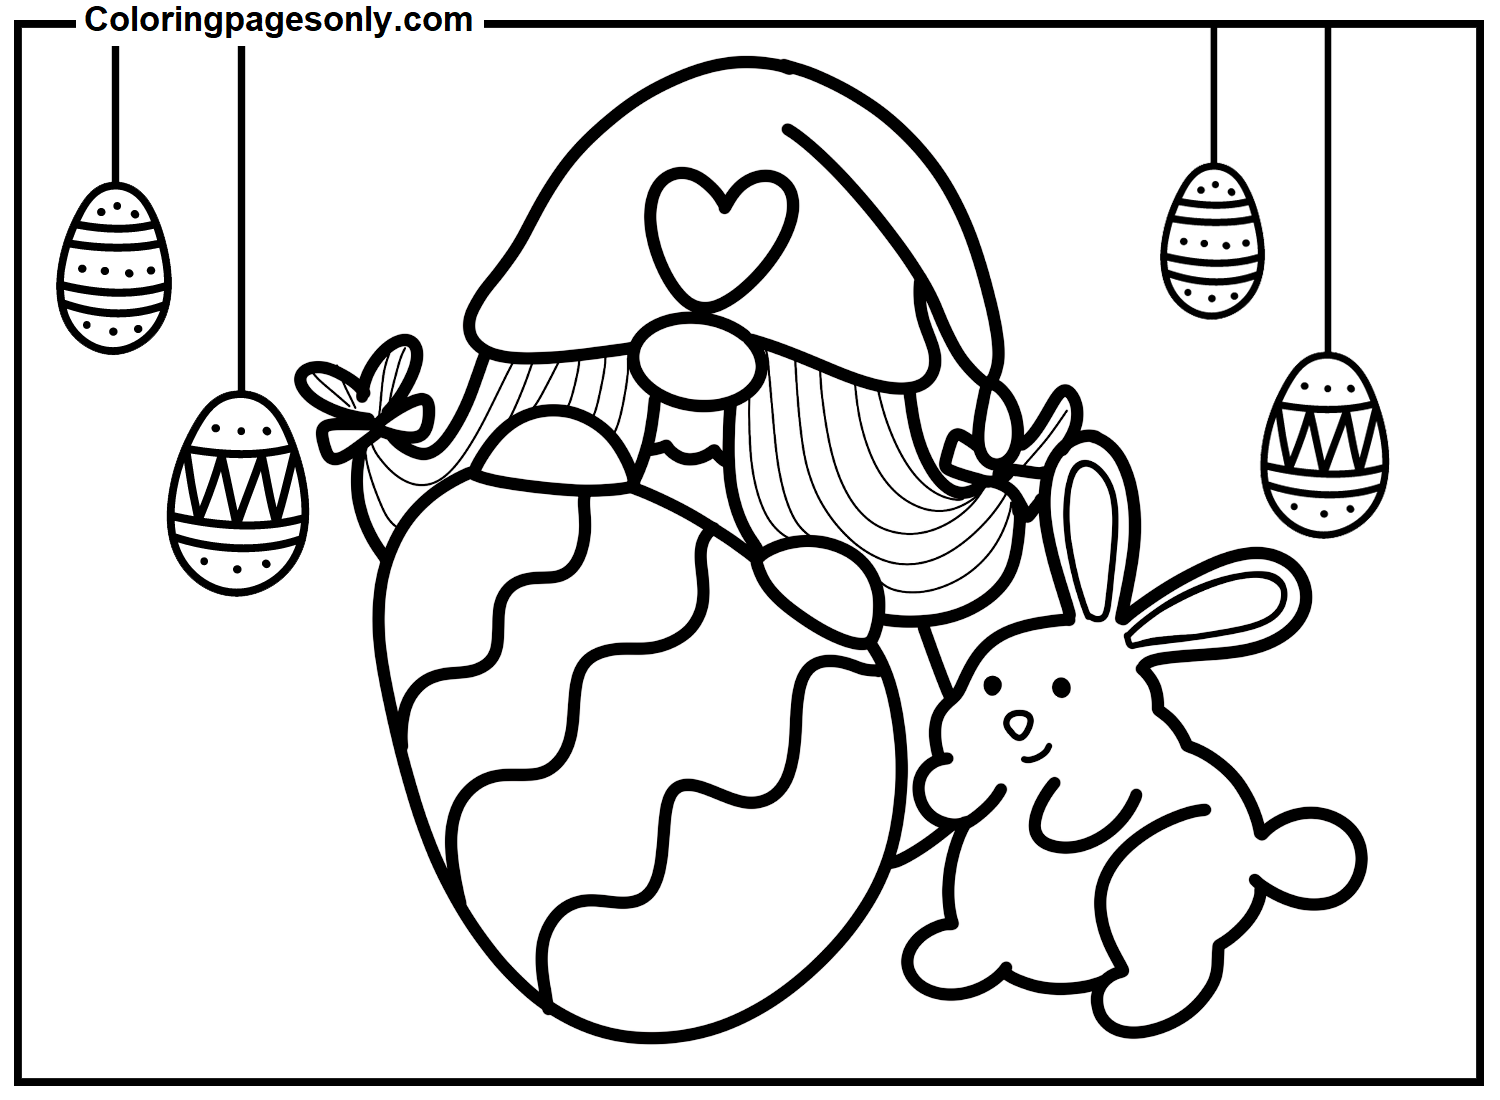 Гномья Пасха с пасхальным яйцом и кроликом из Пасхального гнома